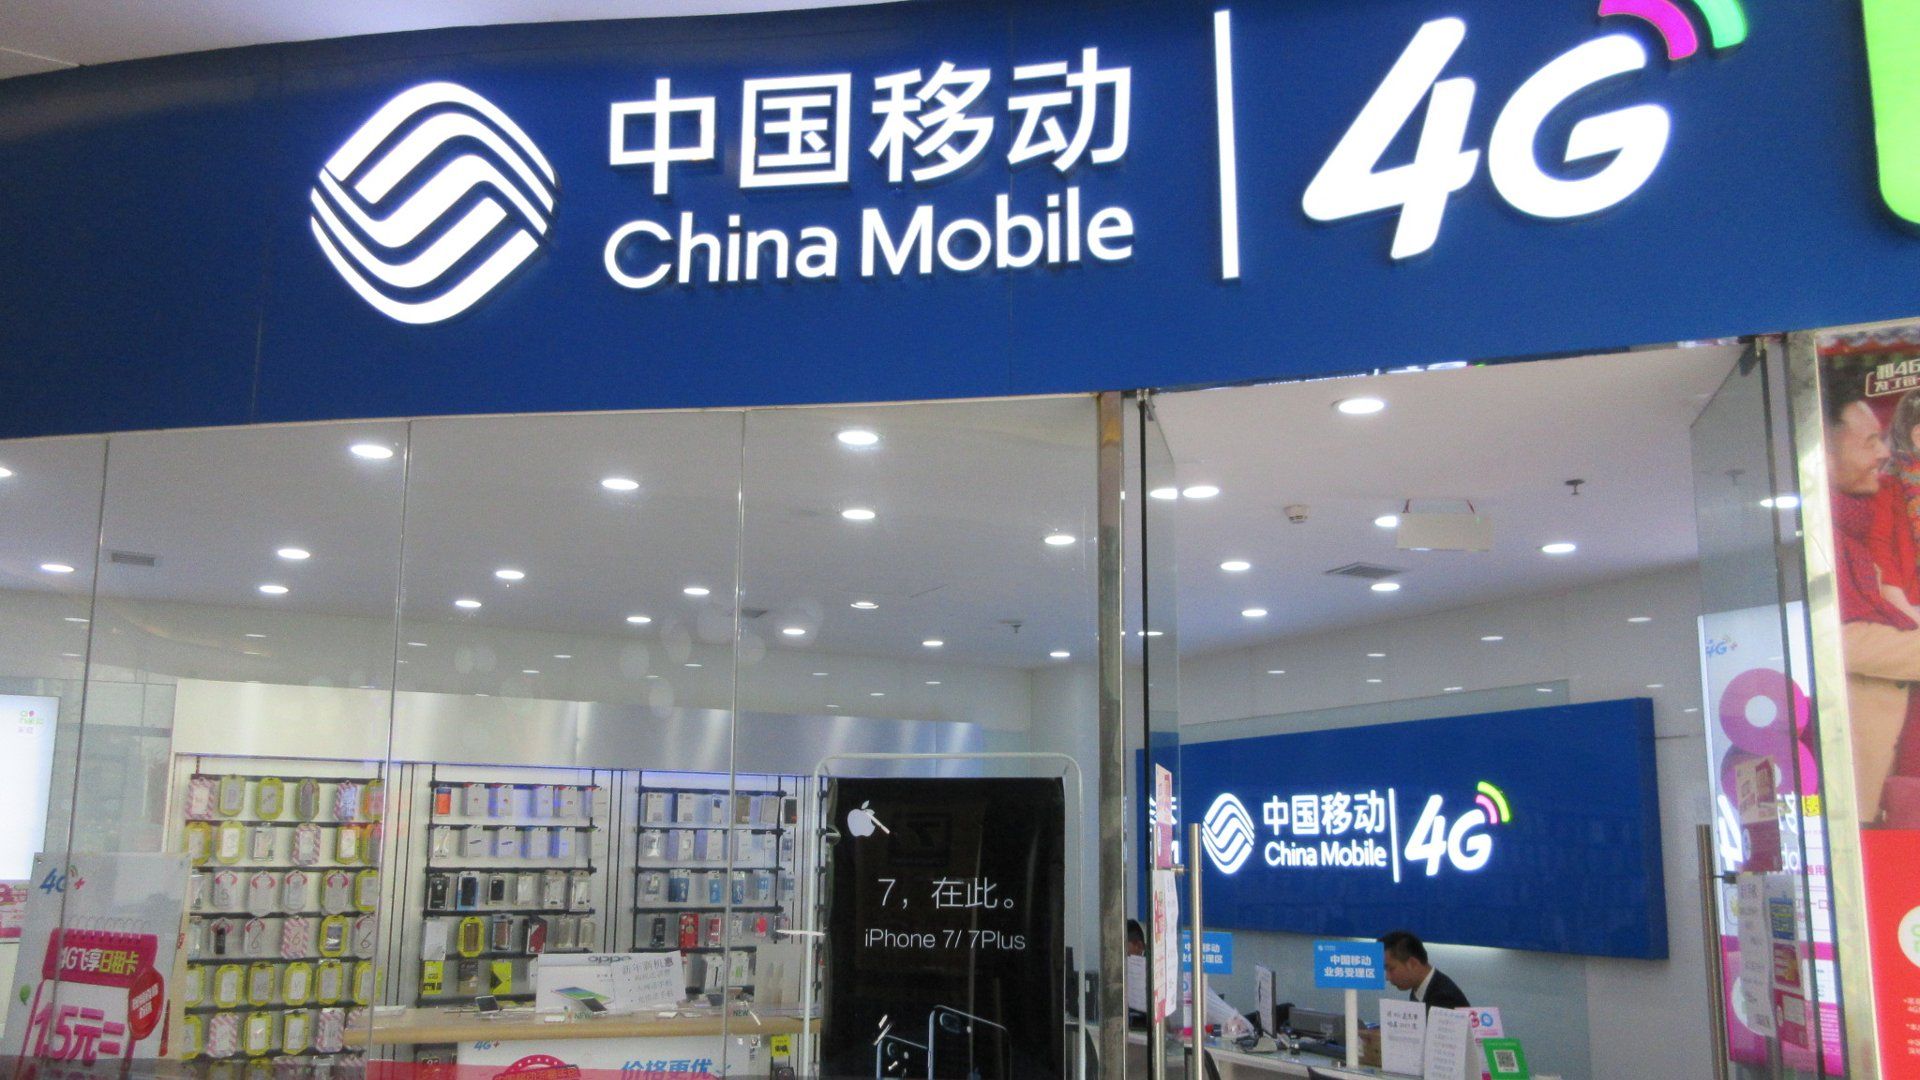 4G China